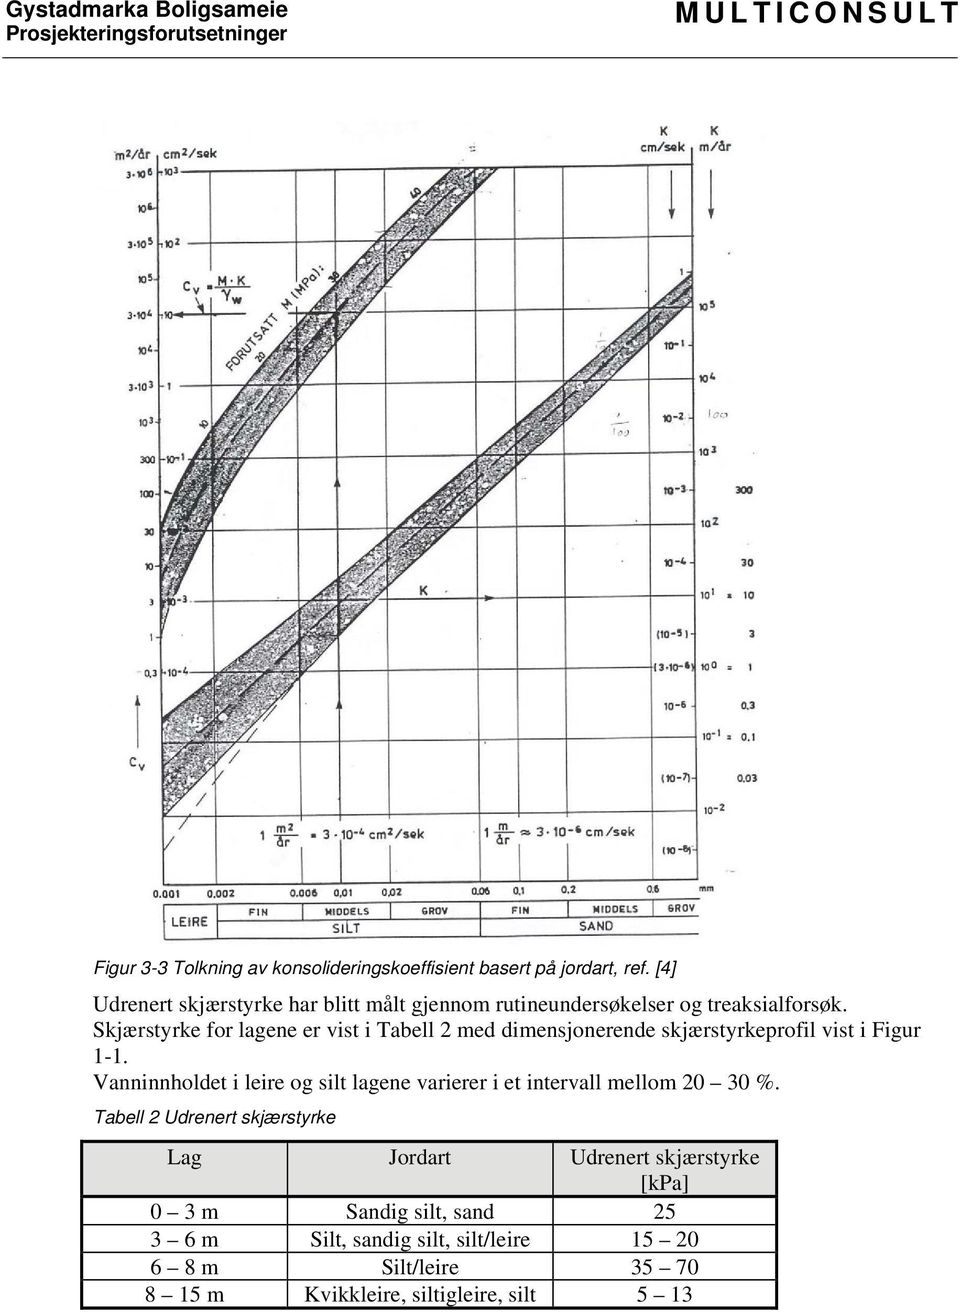 Skjærstyrke for lagene er vist i Tabell 2 med dimensjonerende skjærstyrkeprofil vist i Figur 1-1.